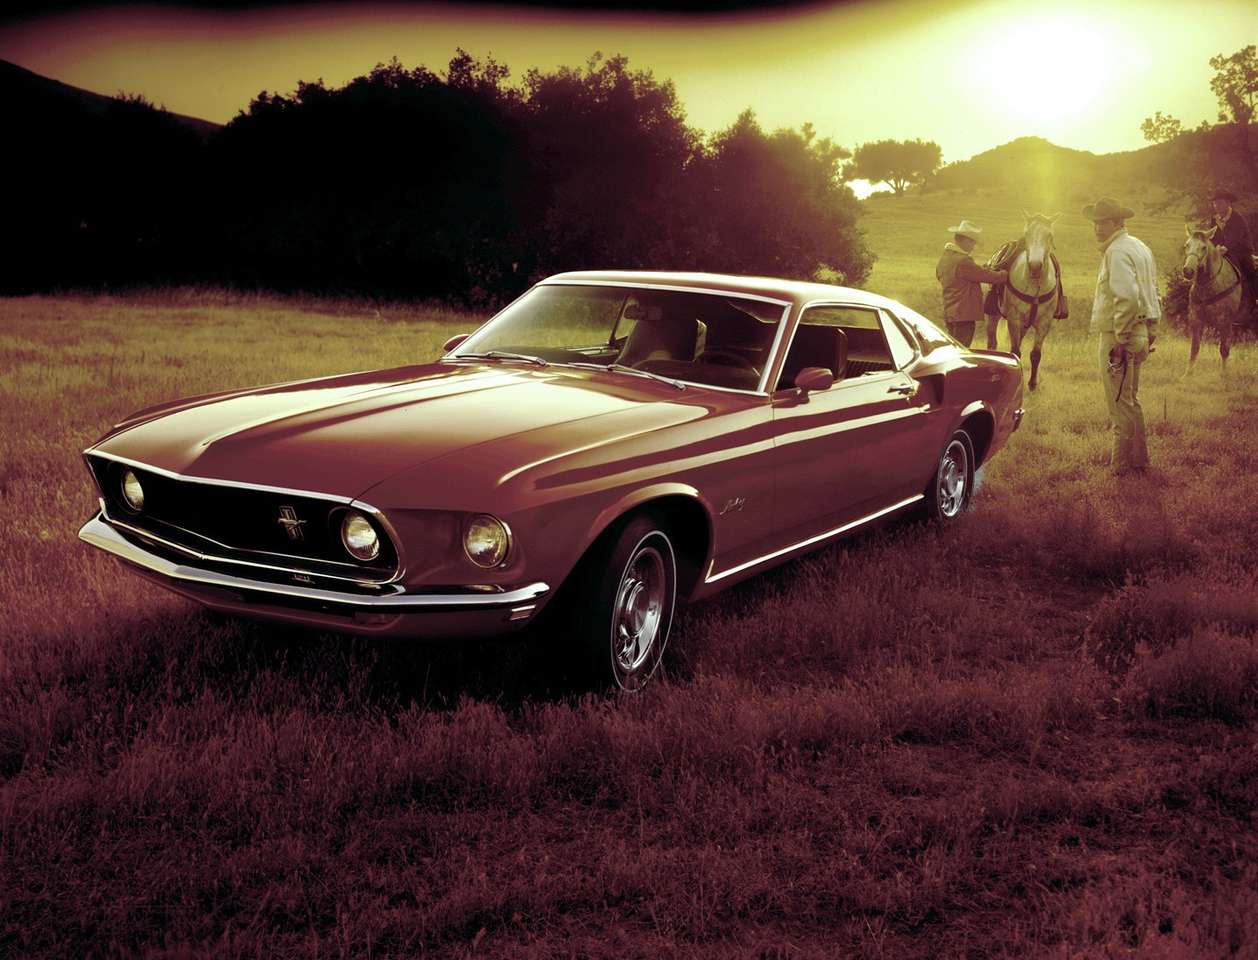 Форд Мустанг фастбек 1969 року випуску онлайн пазл